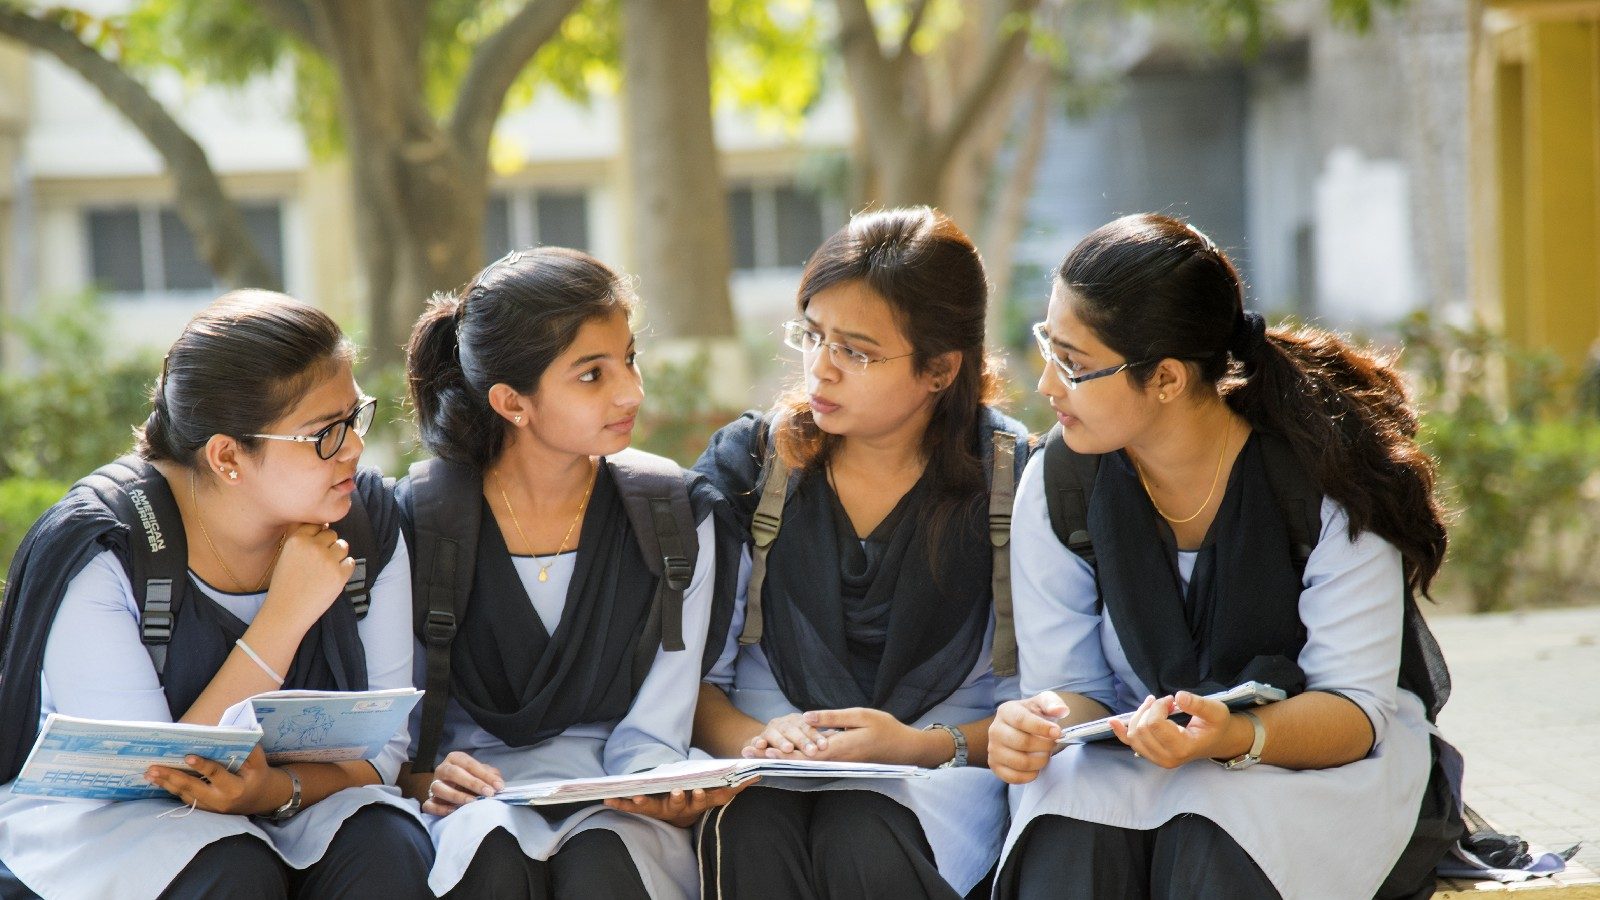 The Delhi civic body conducts the intermediate skill exam in its schools